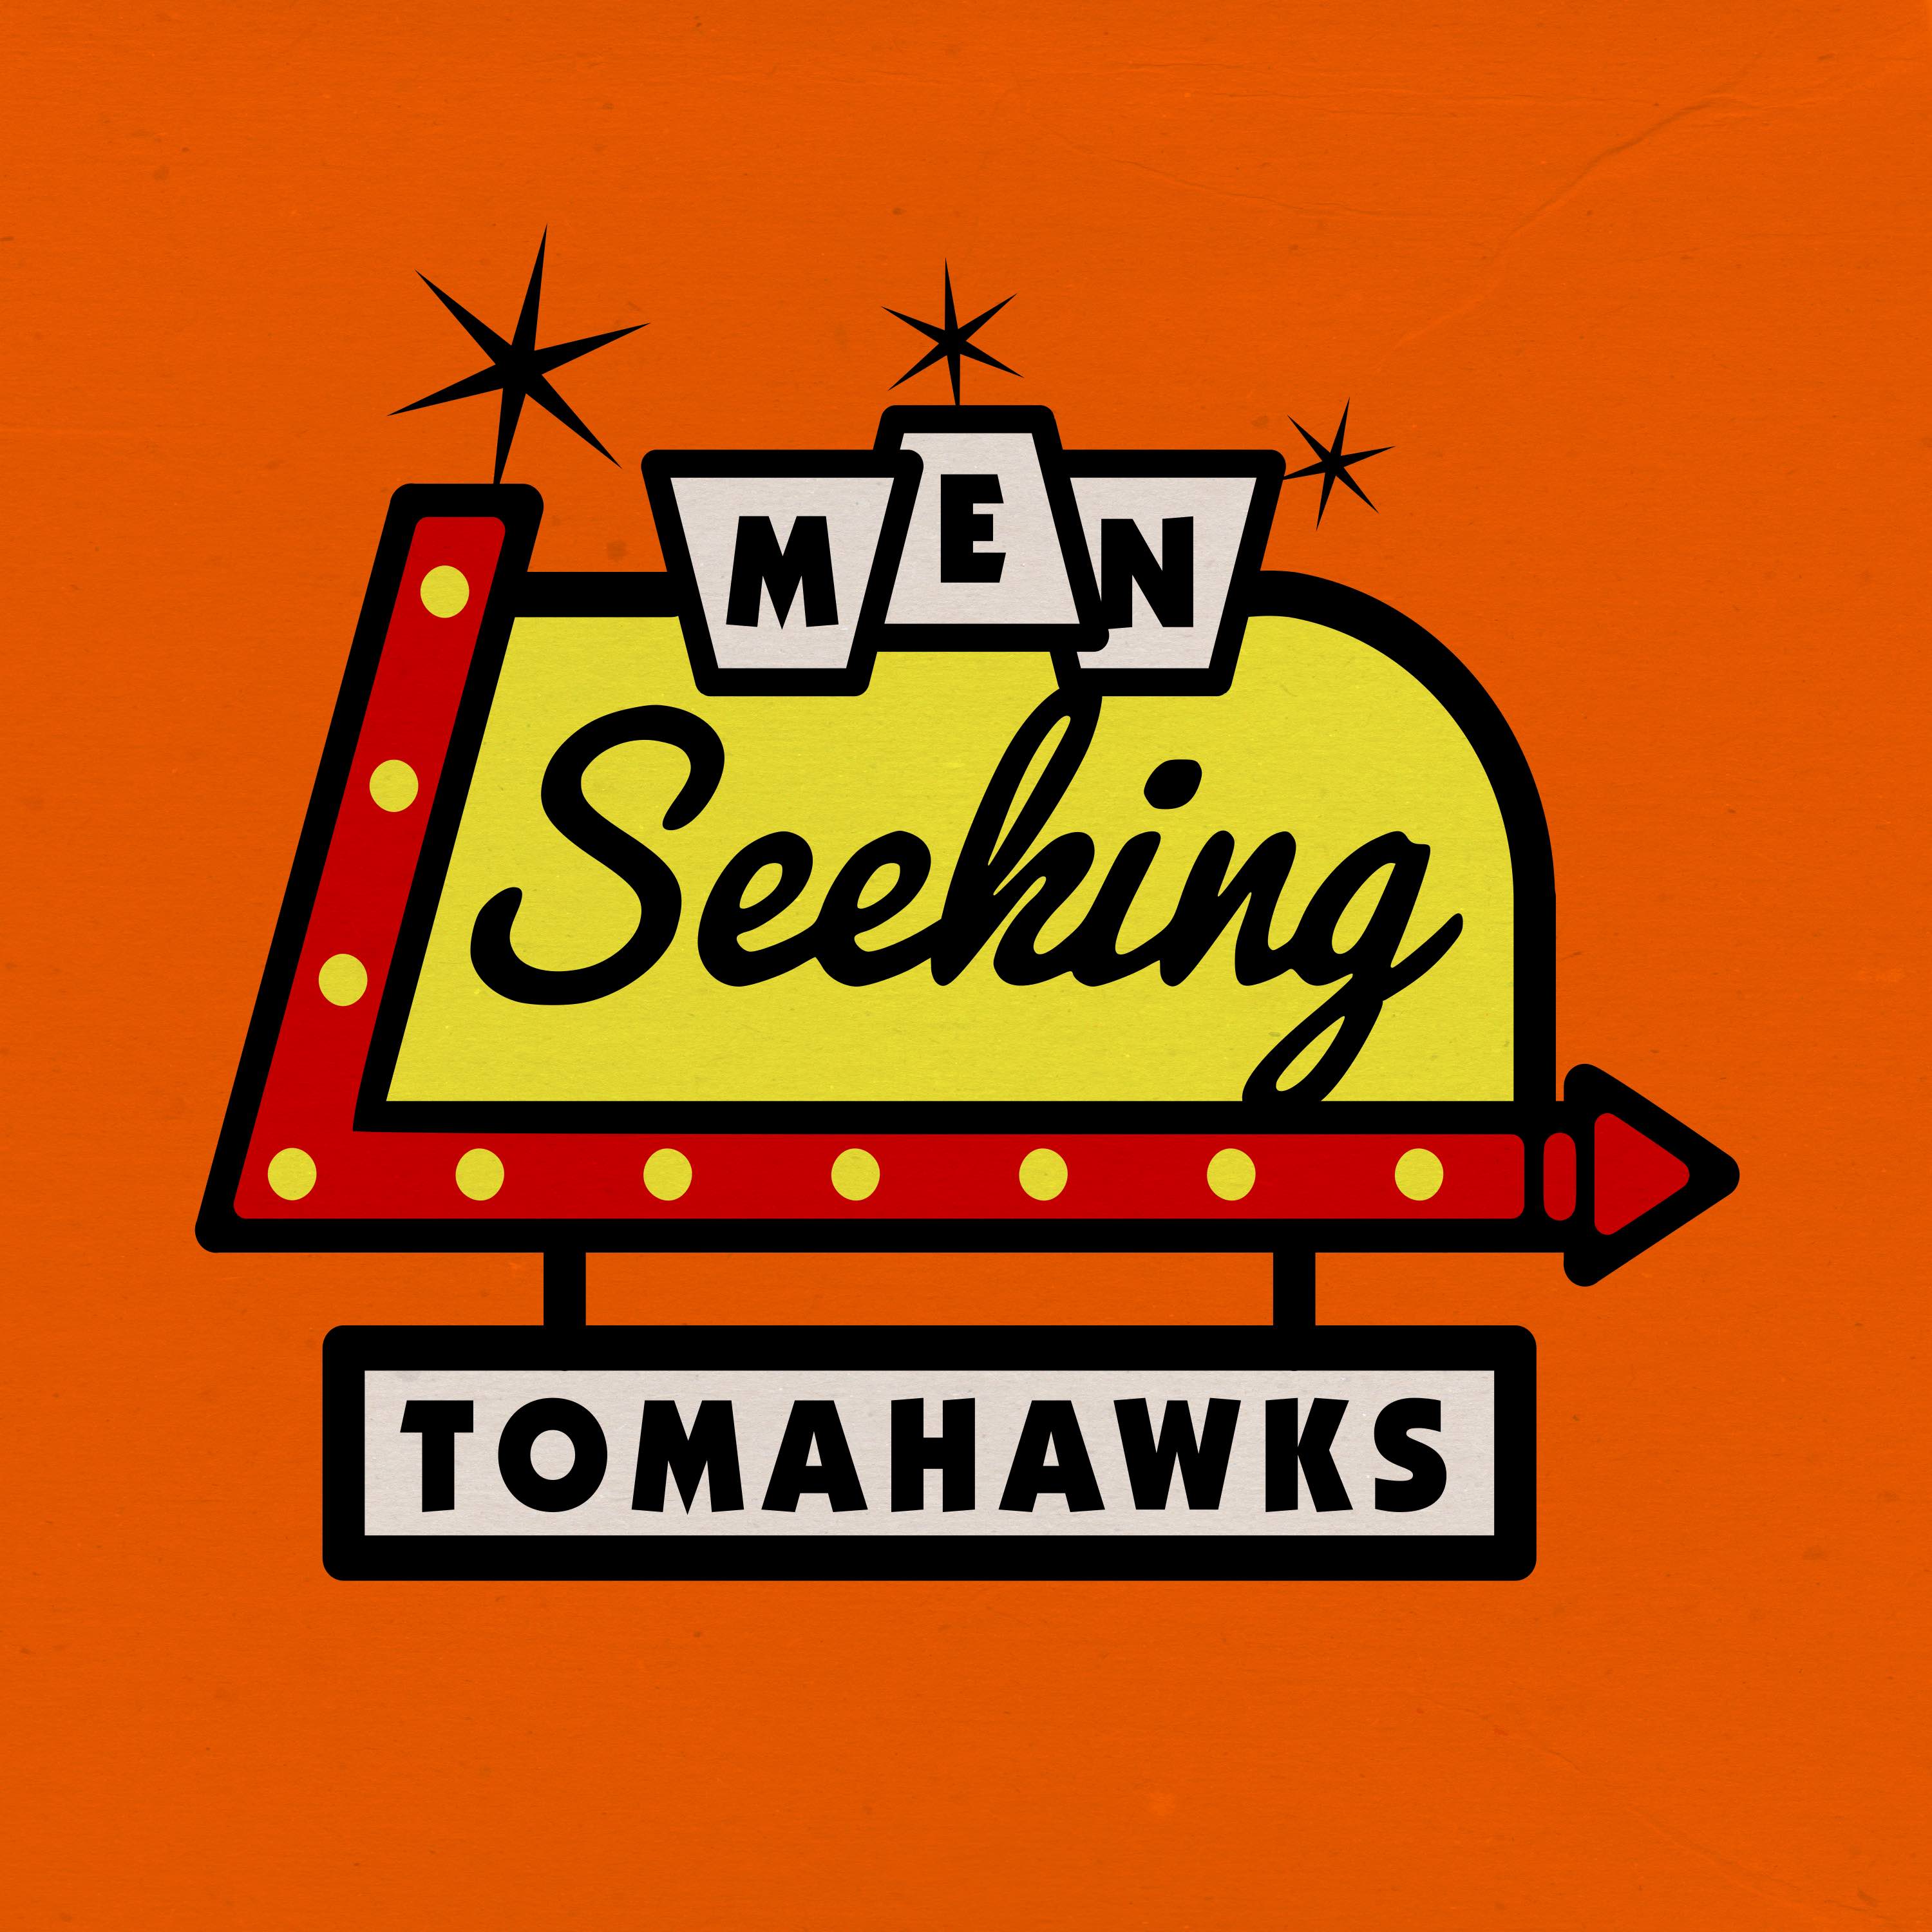 Artwork for podcast Men Seeking Tomahawks